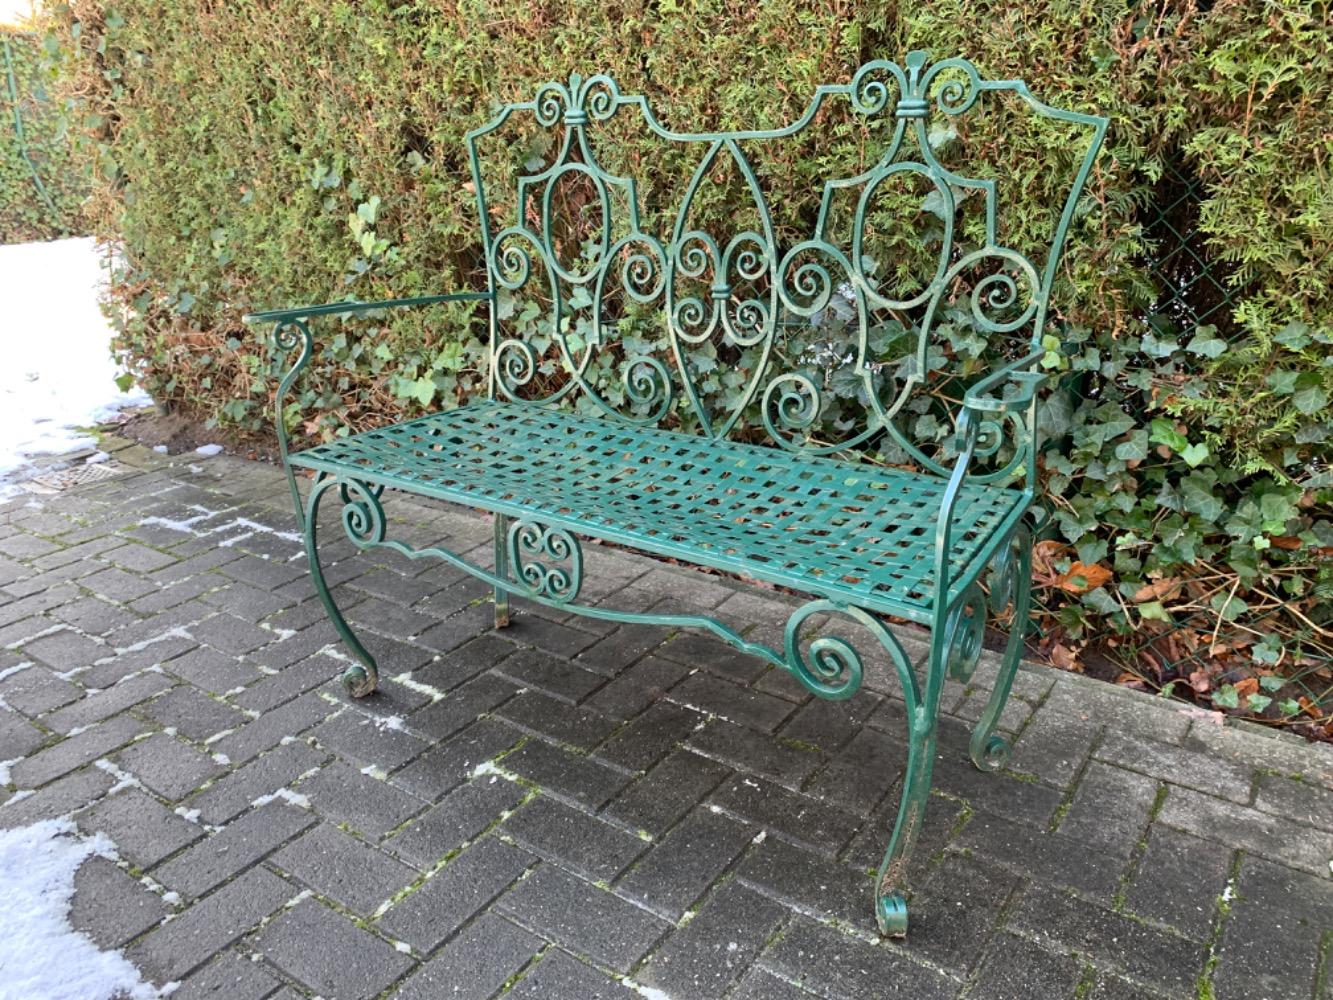 Flemish style Garden bench